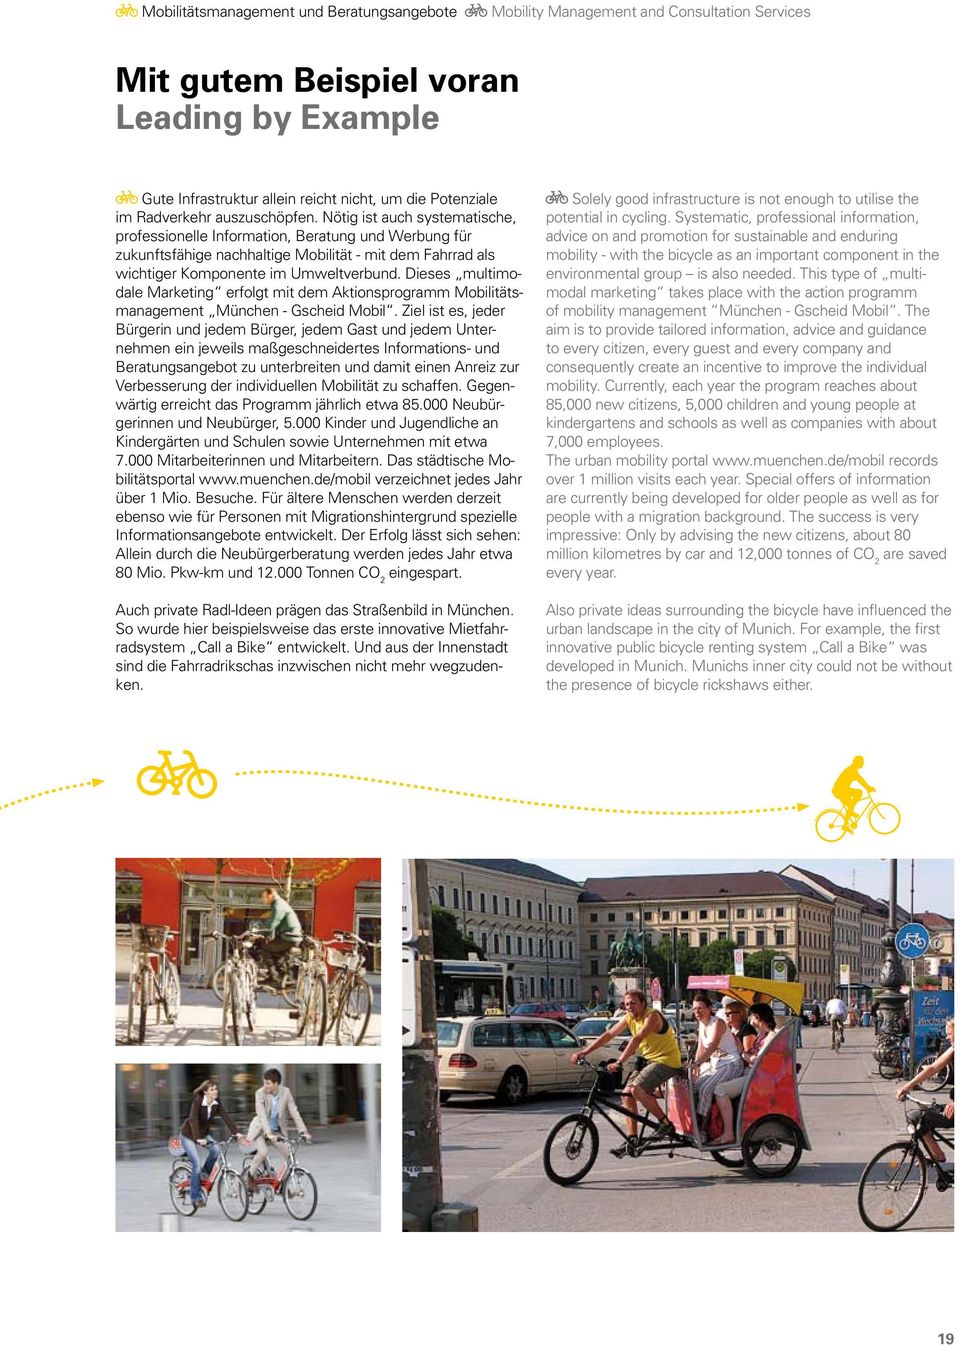 Nötig ist auch systematische, professionelle Information, Beratung und Werbung für zukunftsfähige nachhaltige Mobilität - mit dem Fahrrad als wichtiger Komponente im Umweltverbund.